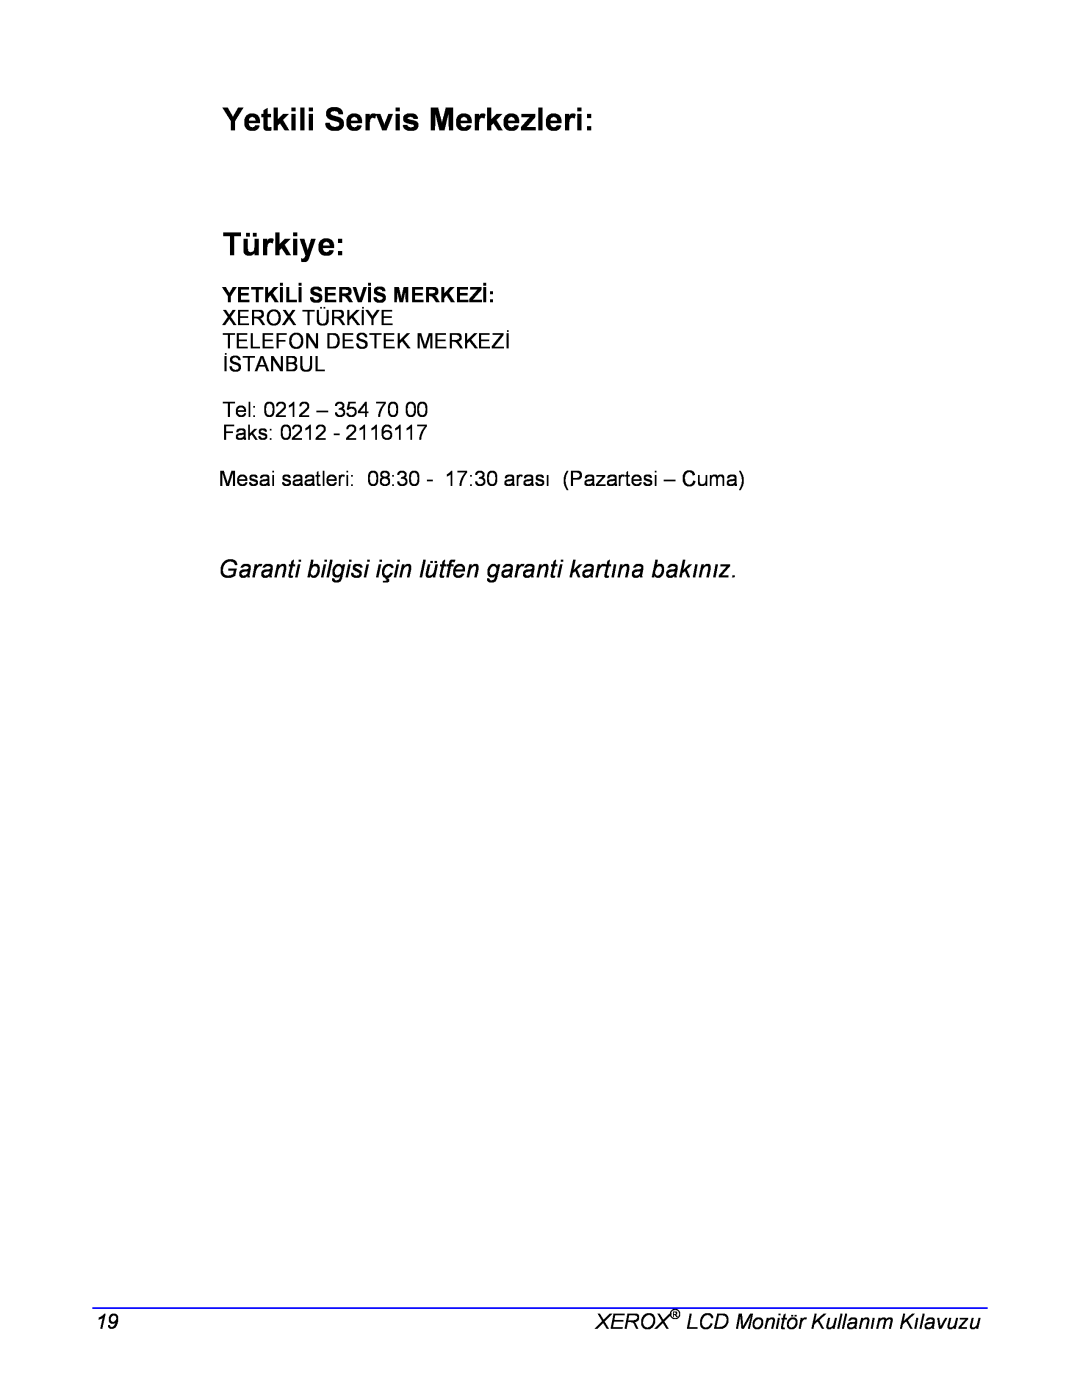 Xerox XG, XA7 manual Yetkili Servis Merkezleri Türkiye, Garanti bilgisi için lütfen garanti kartına bakınız 